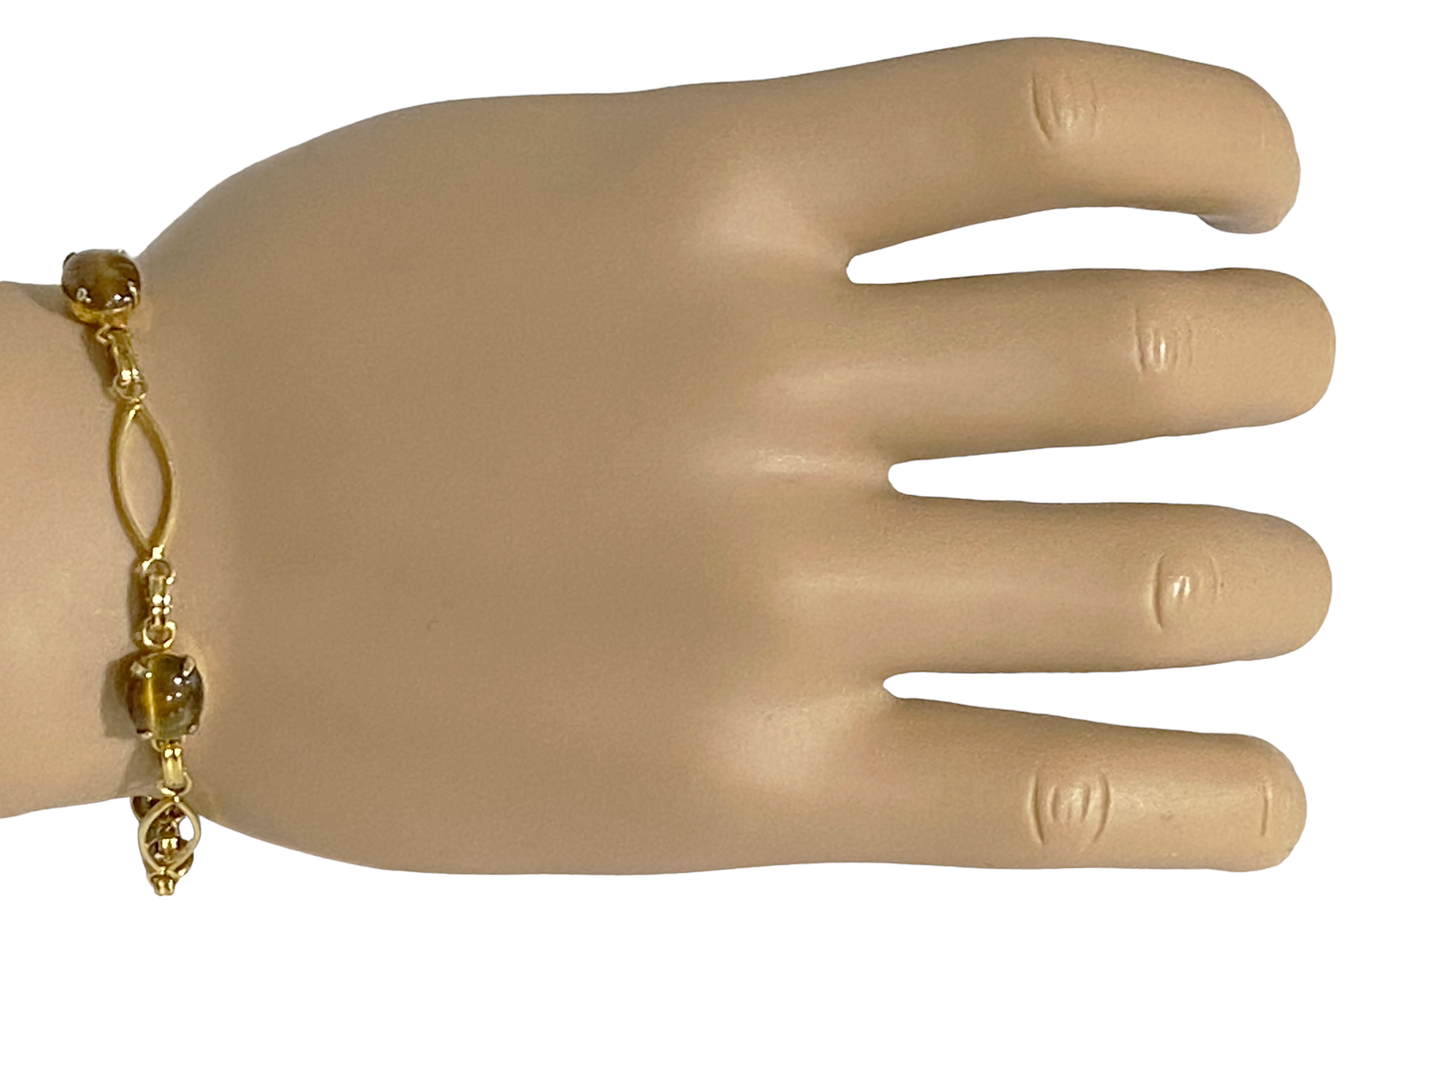 #5045 Vintage 12K Gold Filled Hallmarked Oval Shape Tiger's Eye Stones Bracelet